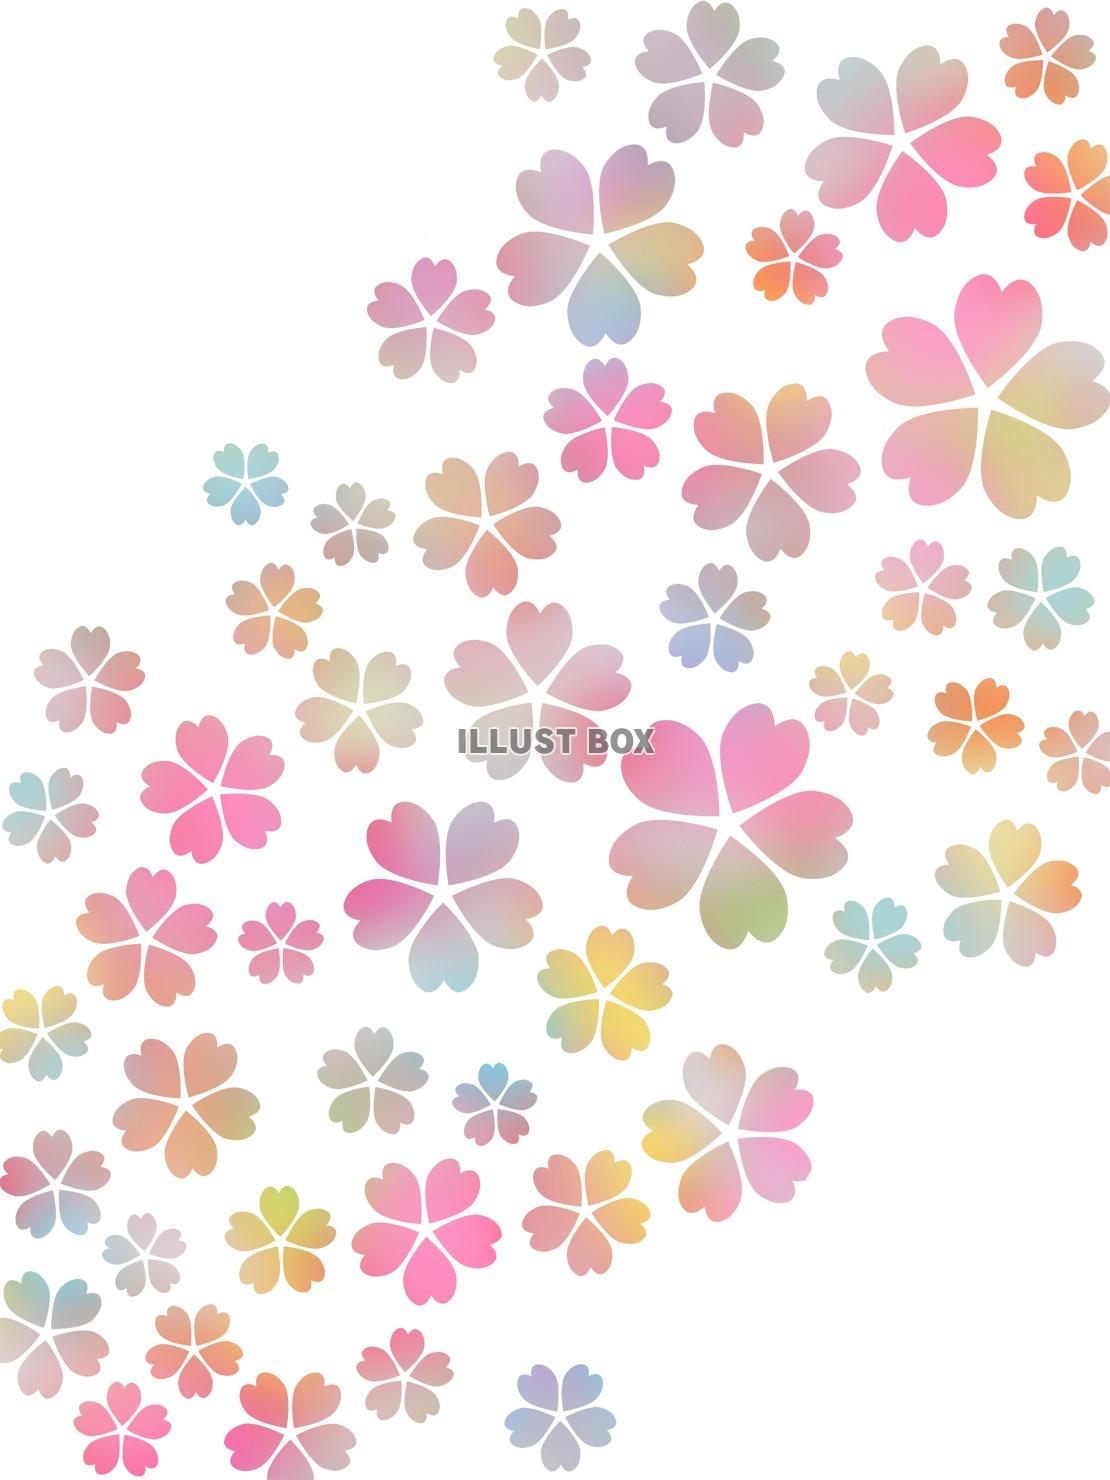 桜の花模様壁紙カラフル背景素材イラスト。ベクターあり